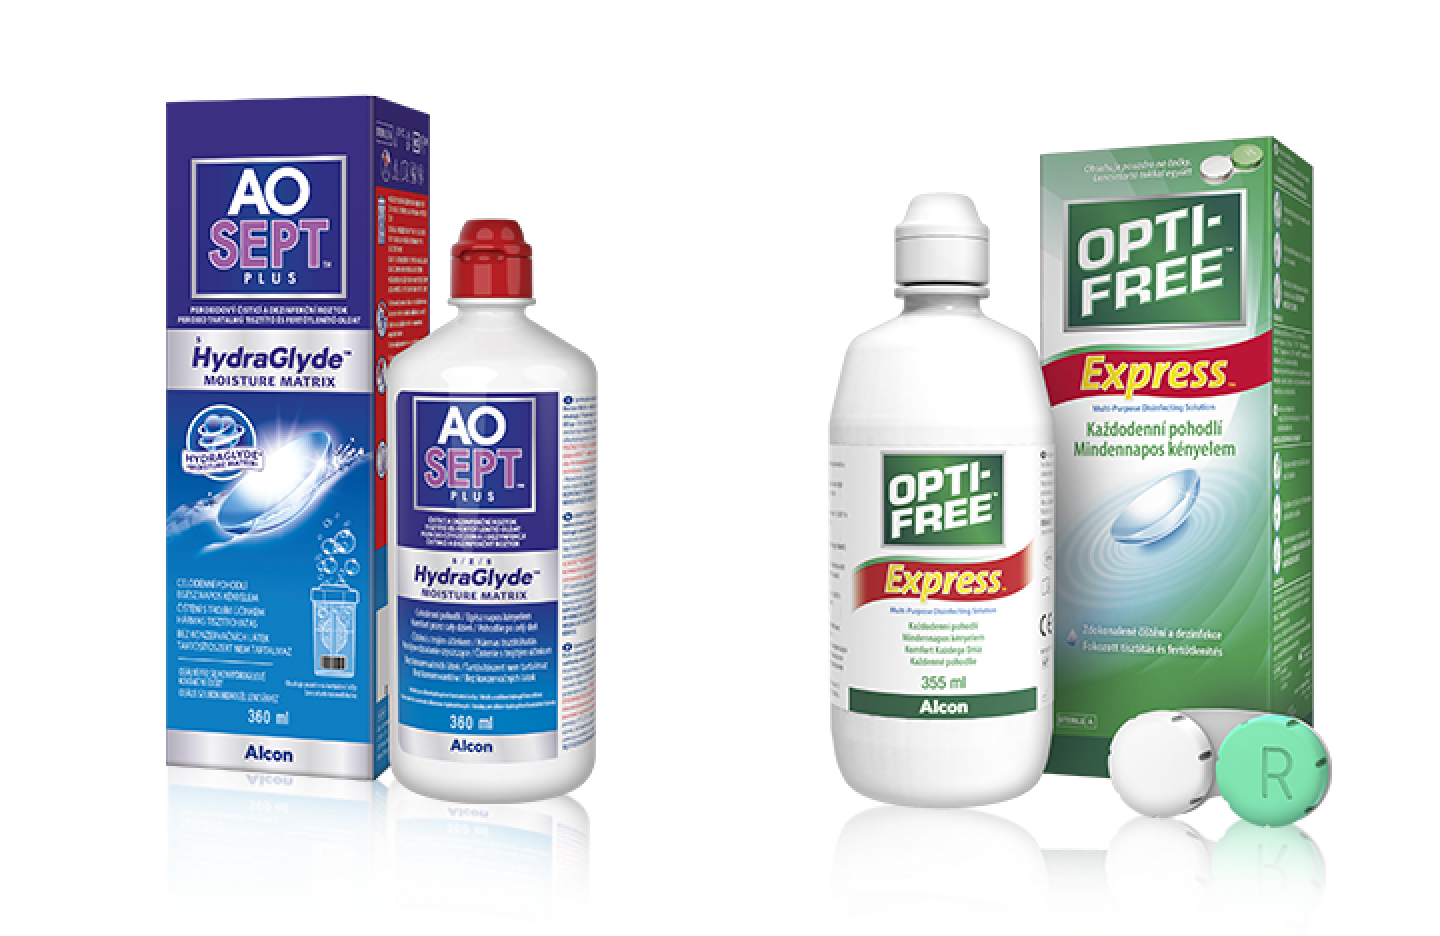 Produktová krabička a fľaštička AO Sept a Opti-free Express - roztoky pre kontaktné šošovky od Alconu